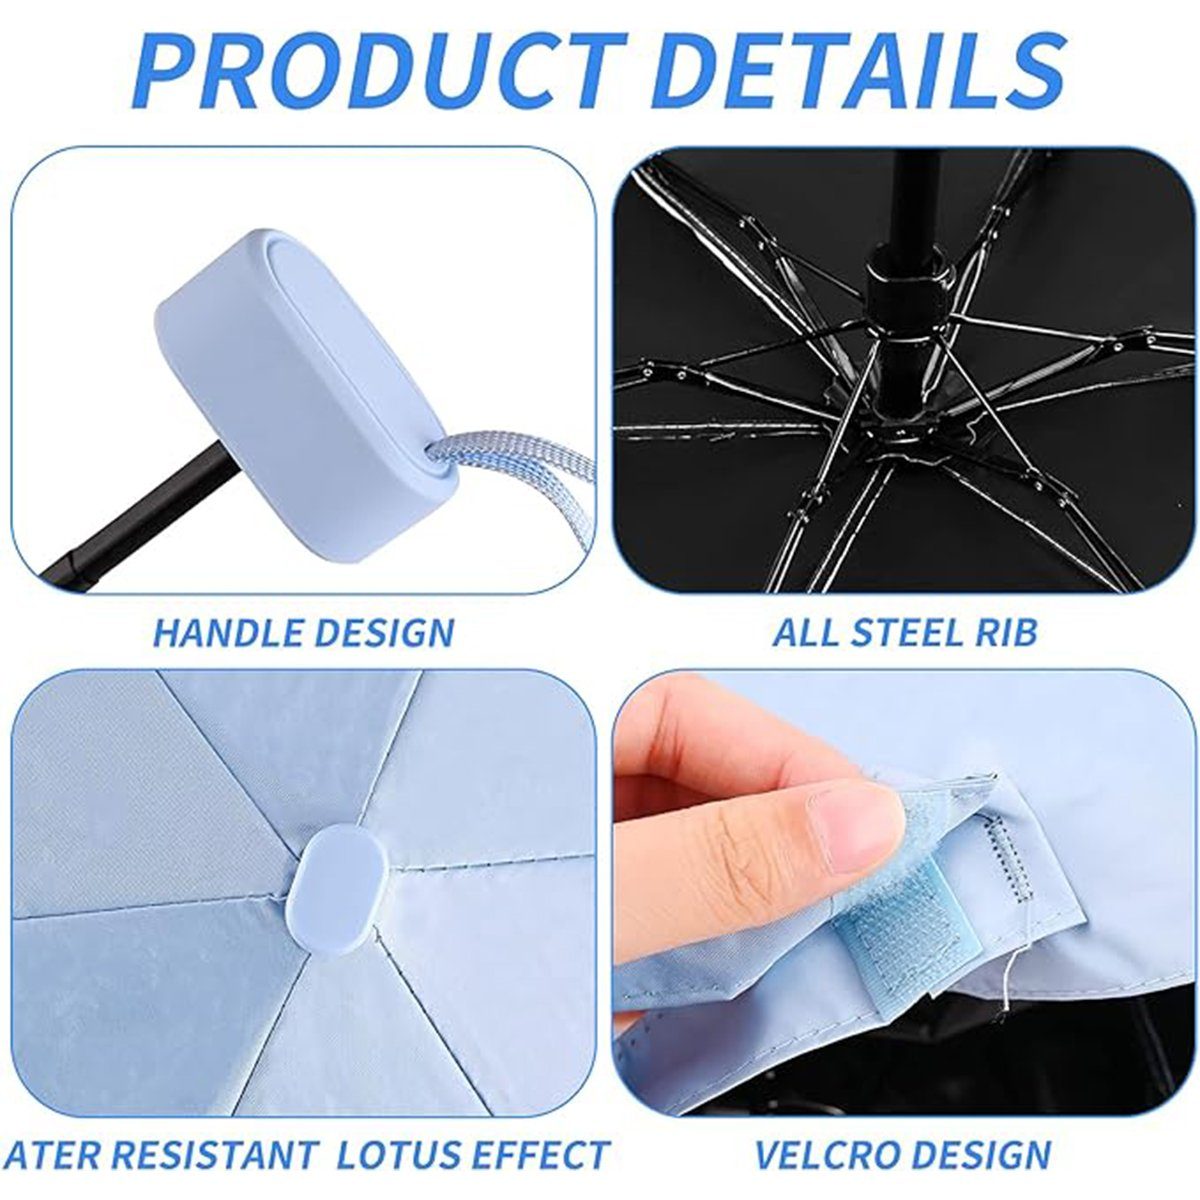 XDeer Taschenregenschirm Taschenschirm Regenschirm Blau Rippen Klein Schutz Ultraleicht, Faltbar UV 6 Mini Regenschirm Taschenregenschirm Sturmfest